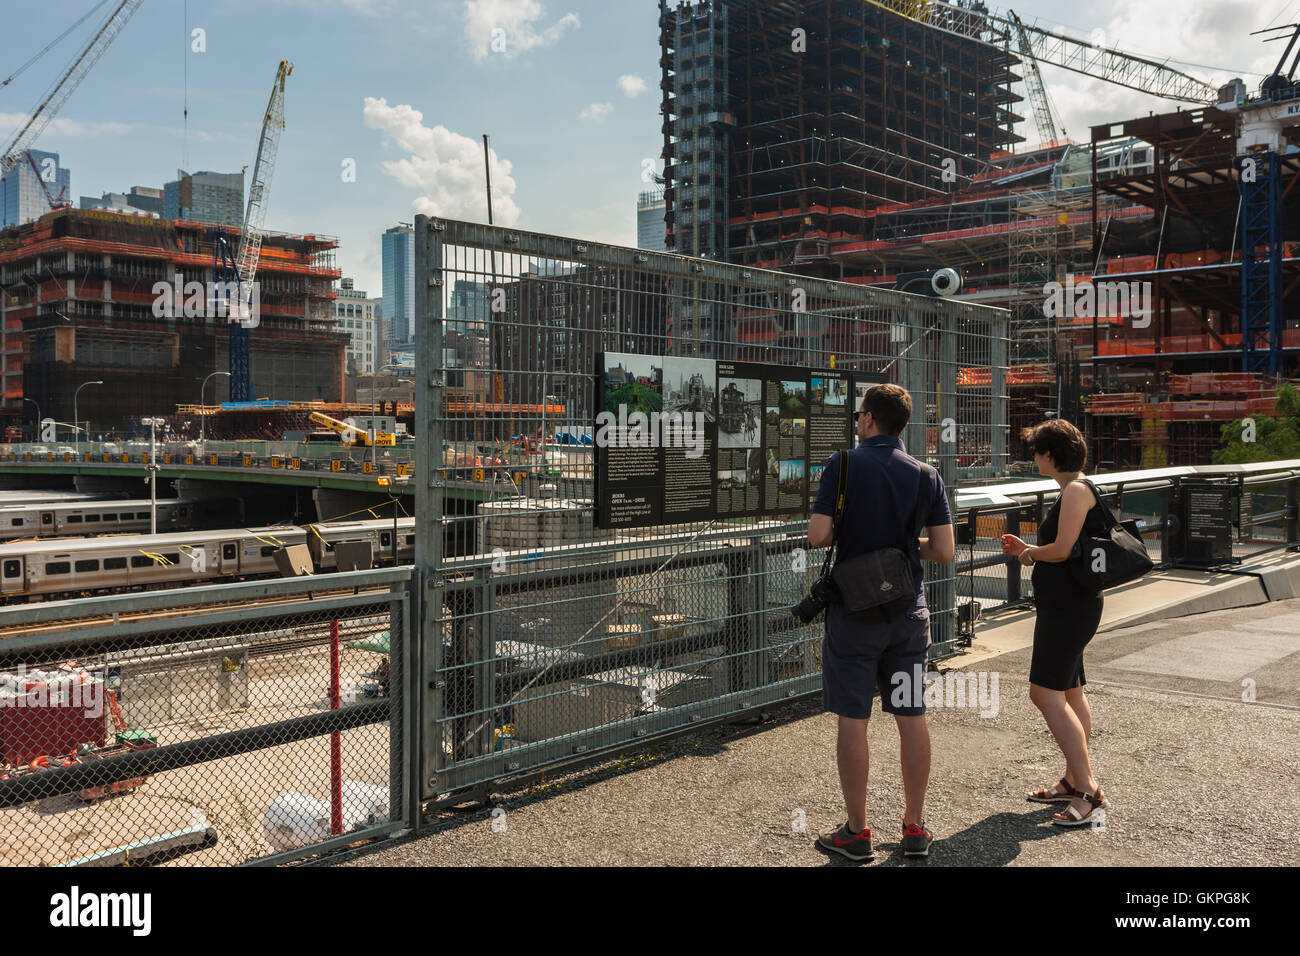 Touristen zu lesen ein Schild mit Informationen über die High Line-Verlängerung in der Nähe von Hudson Yards Entwicklung in New York City. Stockfoto